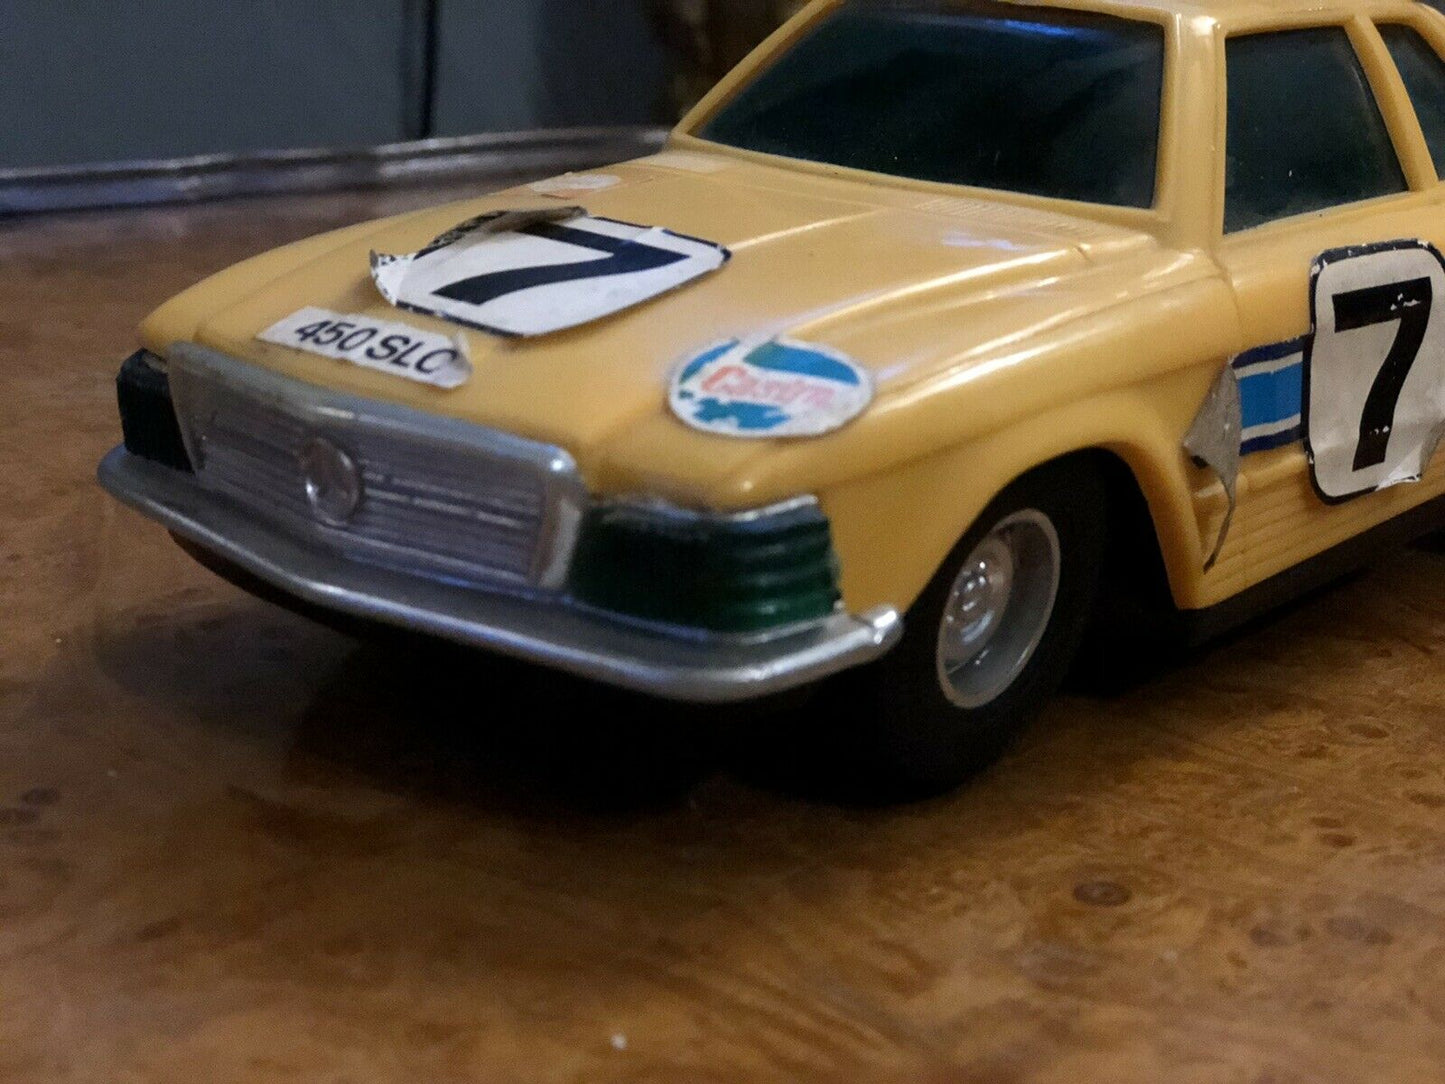 Mercedes Benz Racing Plastic Toy Car